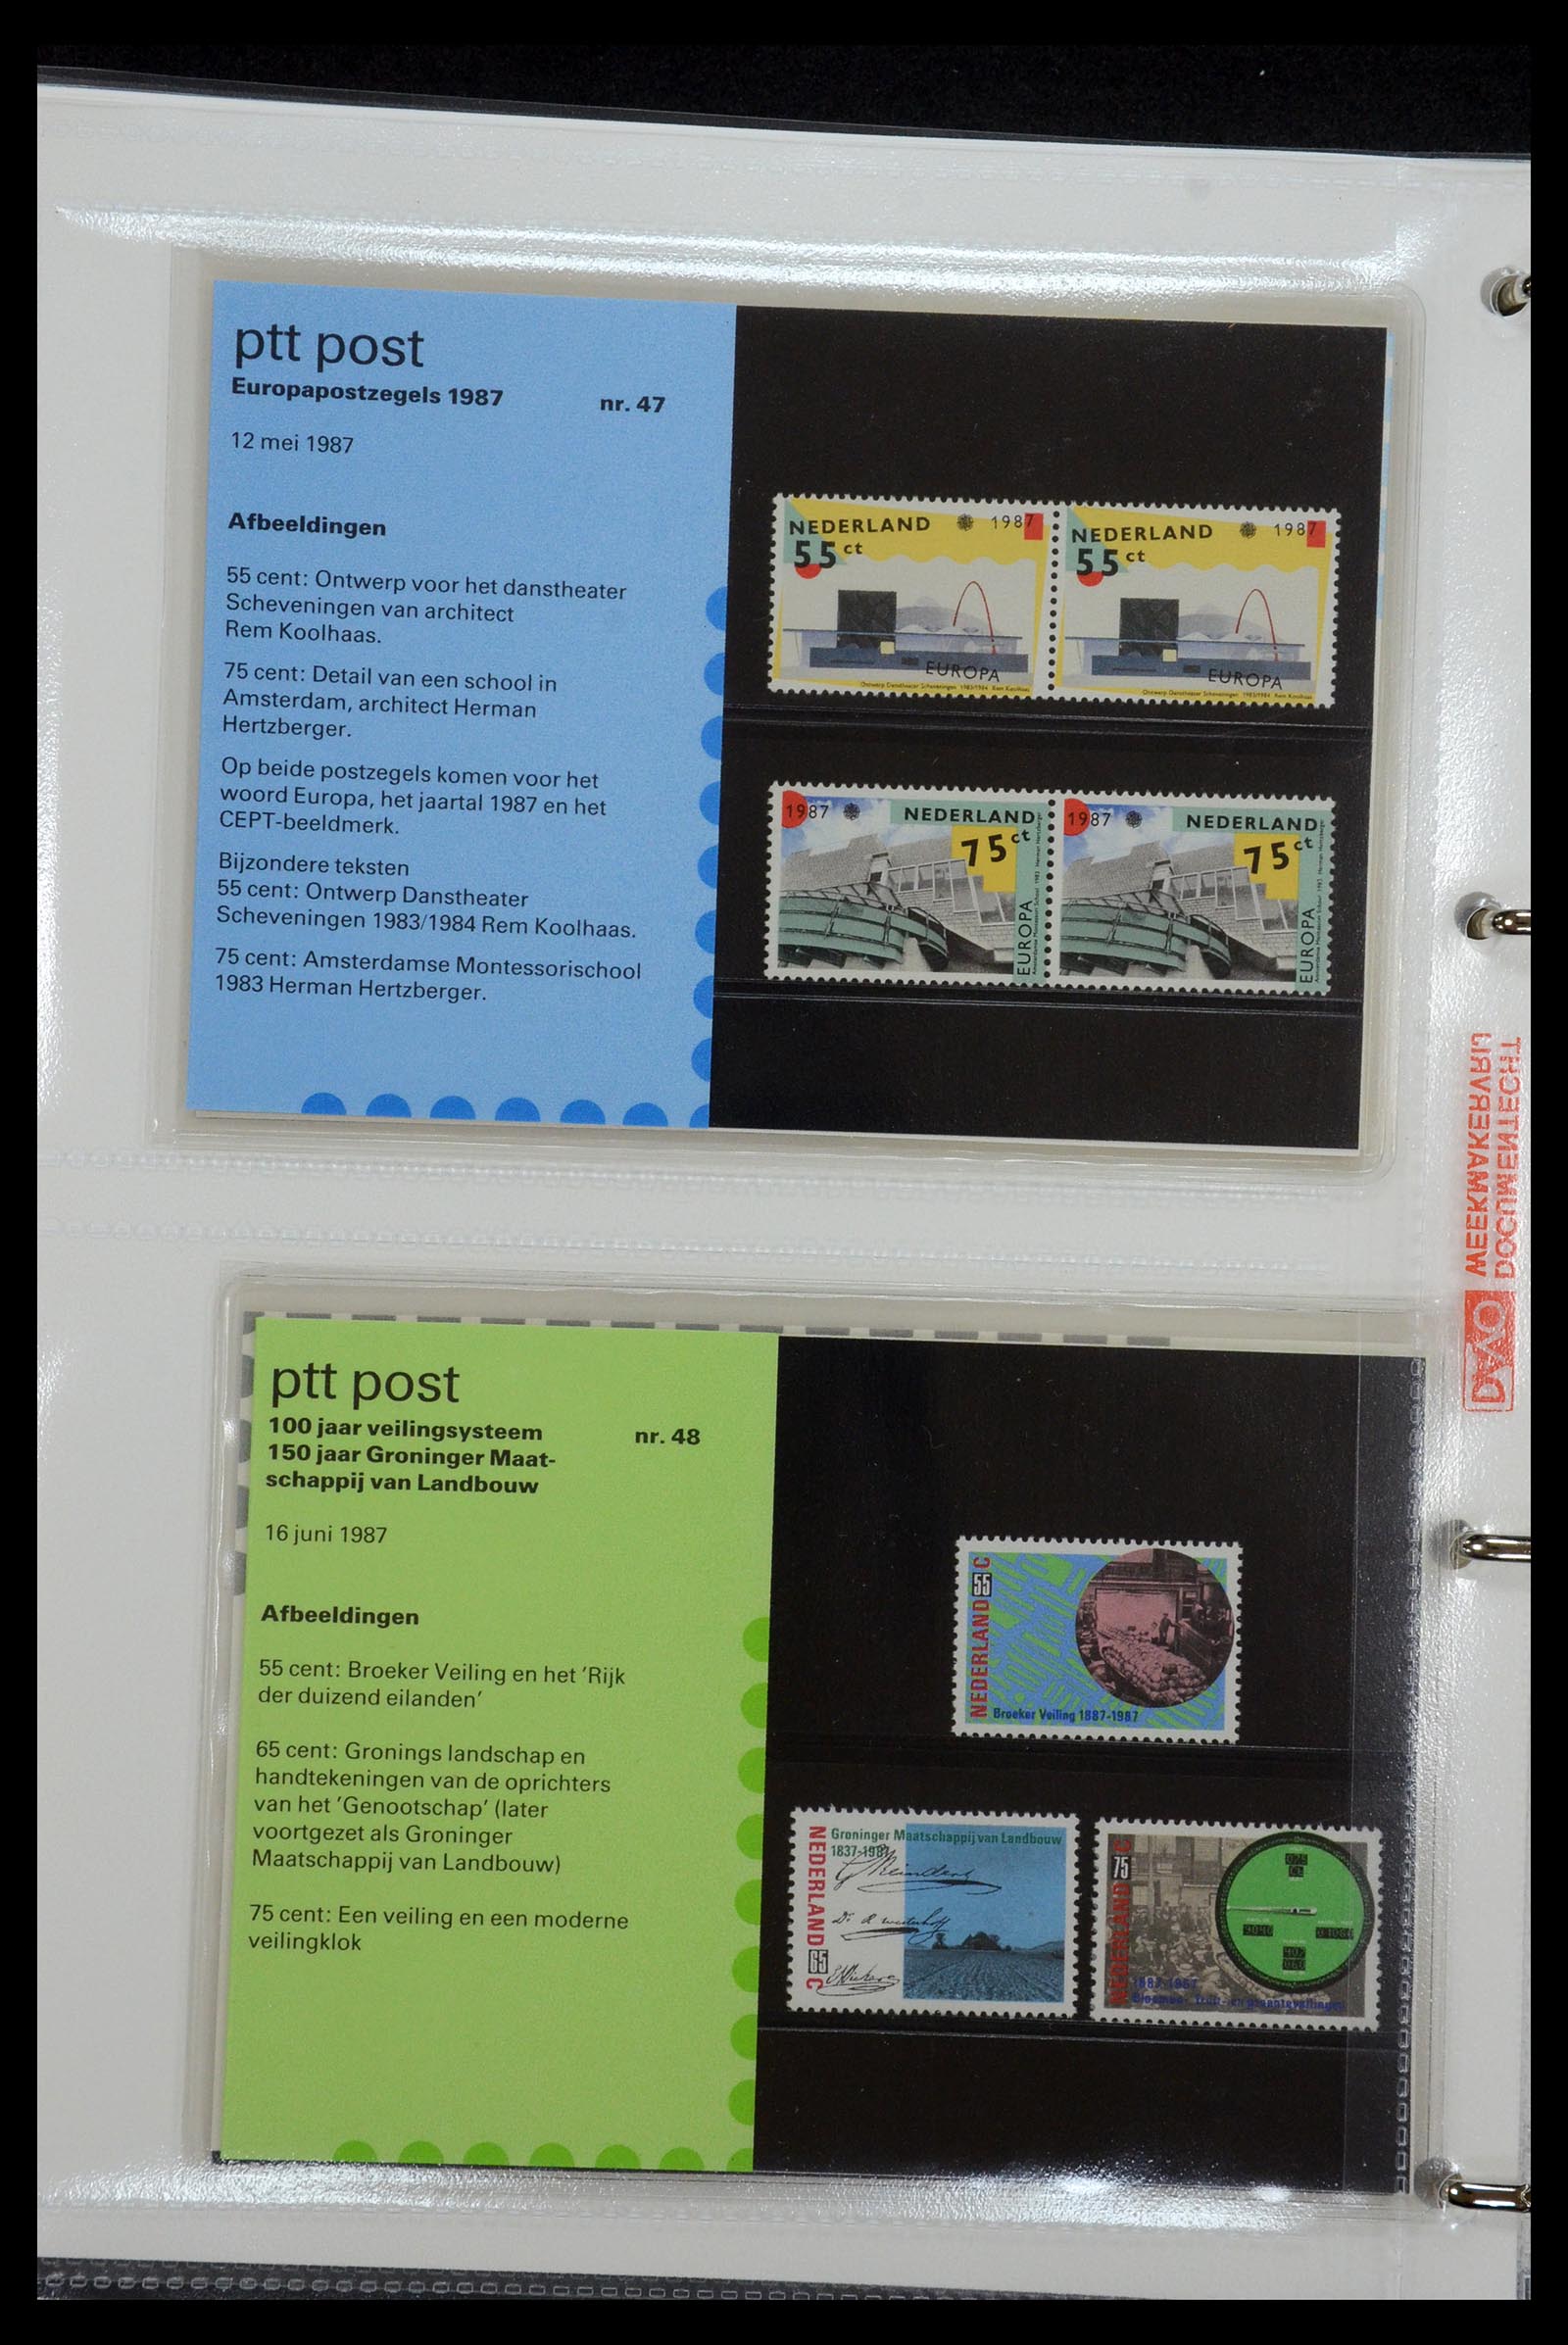 35144 024 - Stamp Collection 35144 Netherlands PTT presentation packs 1982-2021!